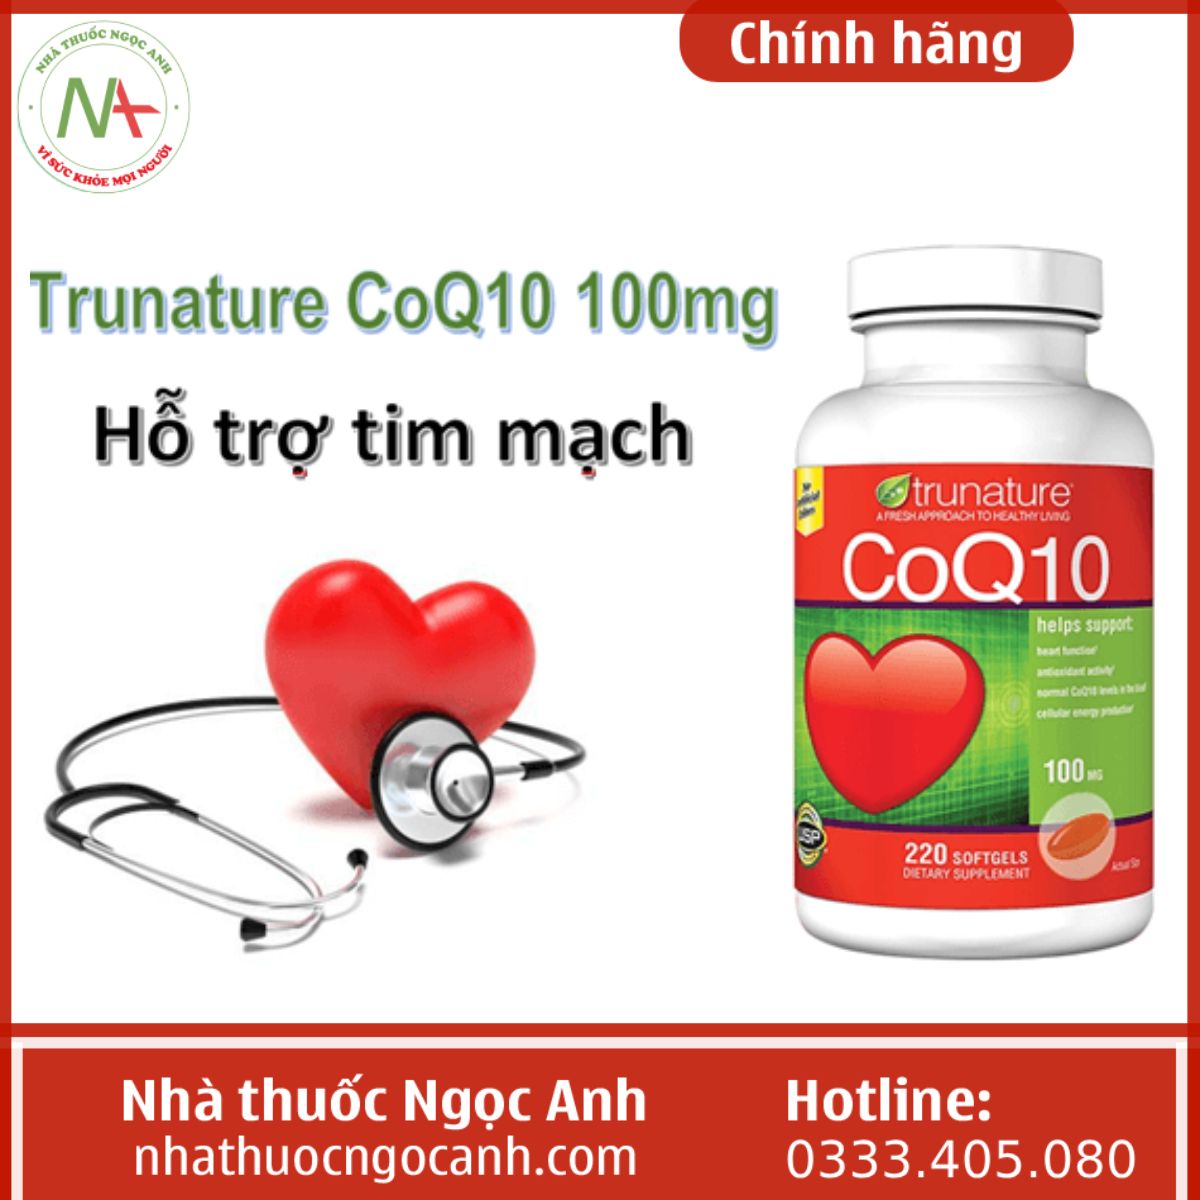 Trunature CoQ10 hỗ trợ tim mạch